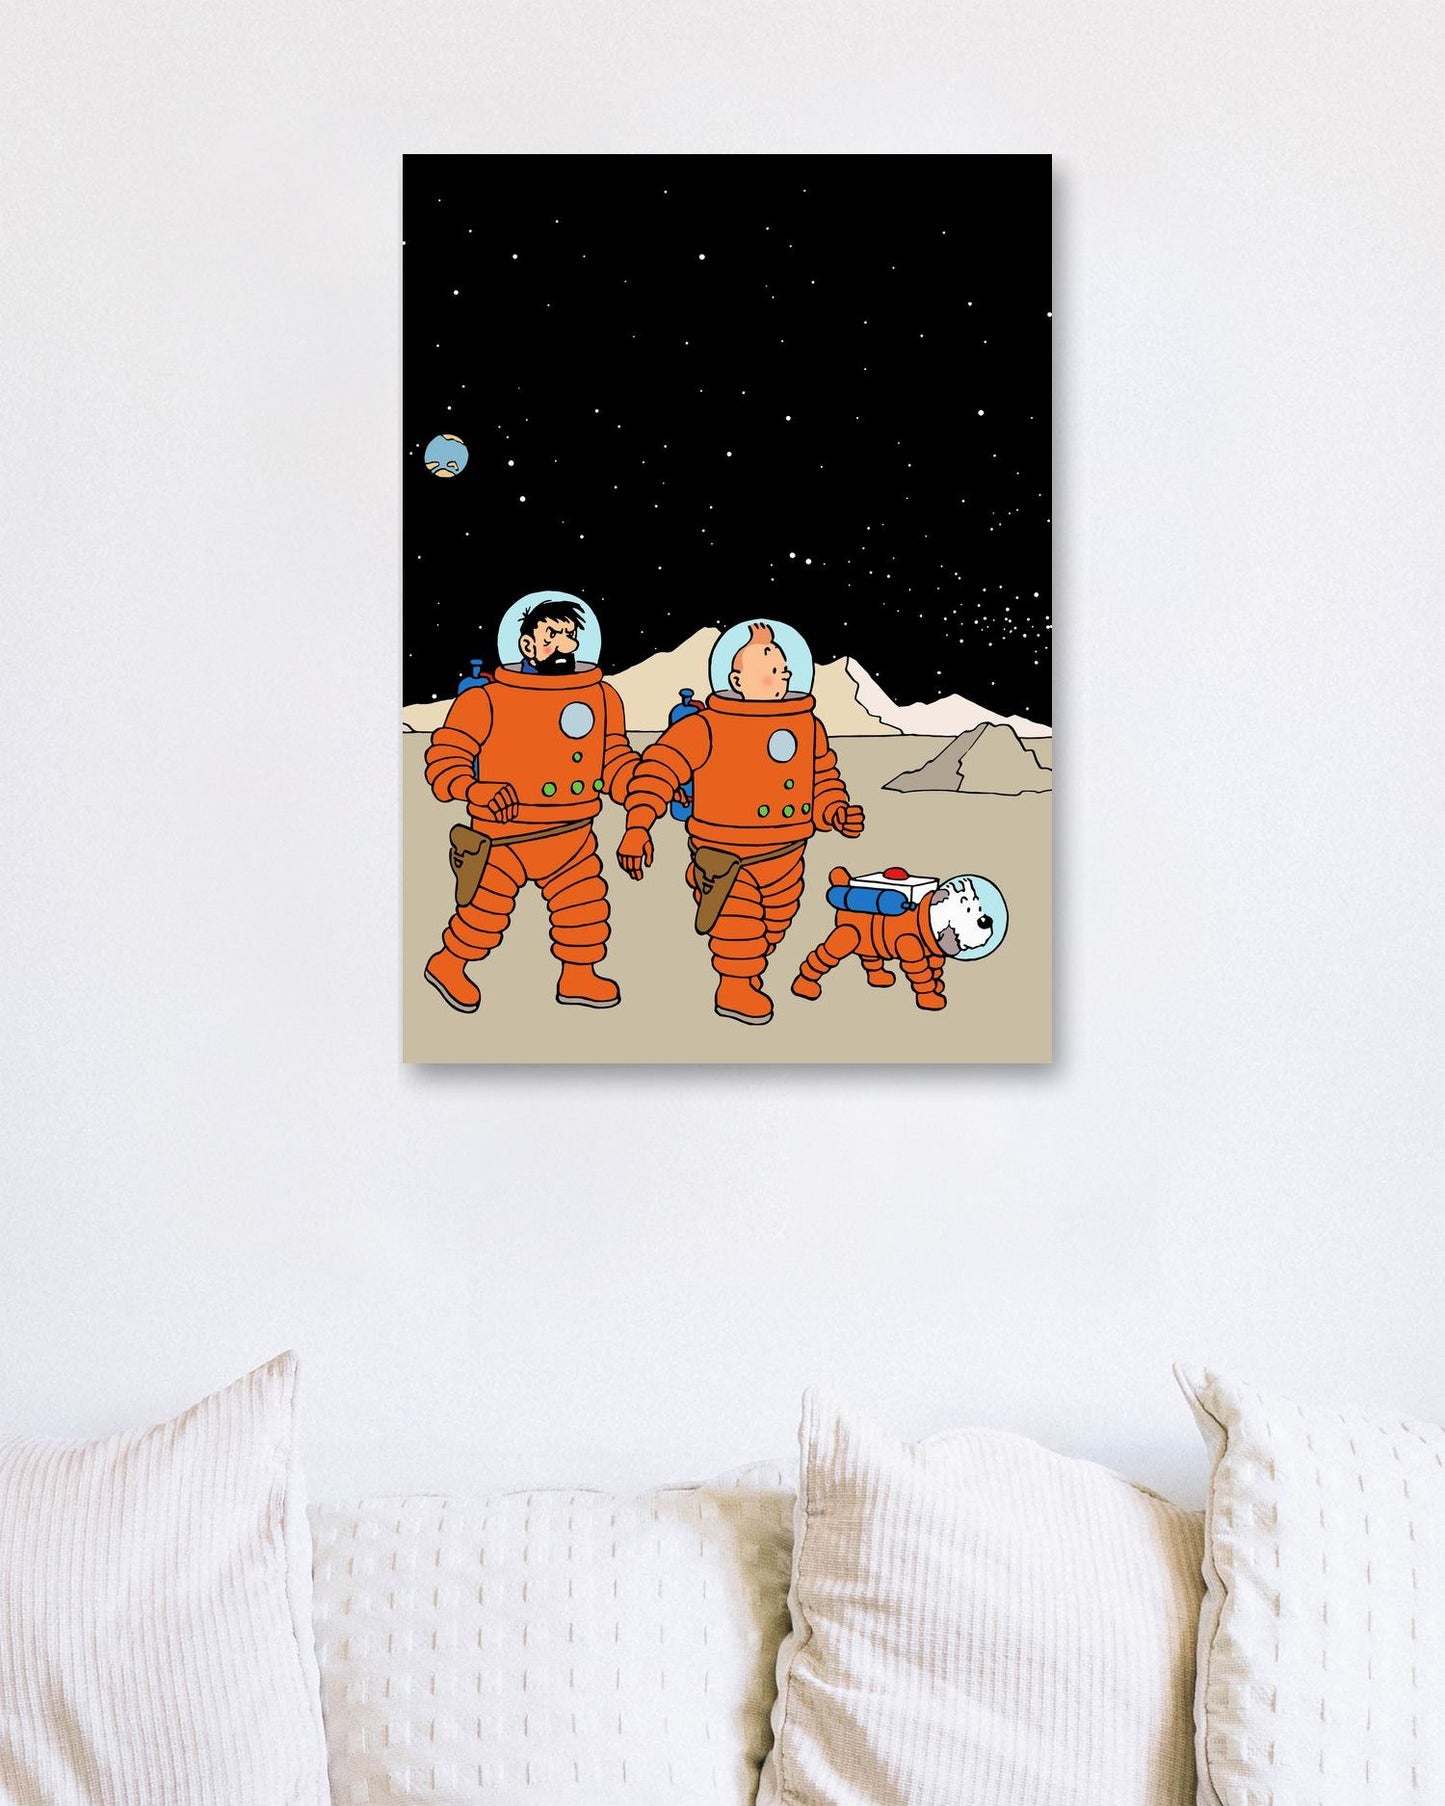 tintin astronauts adventures - @SETYANUGRAHA